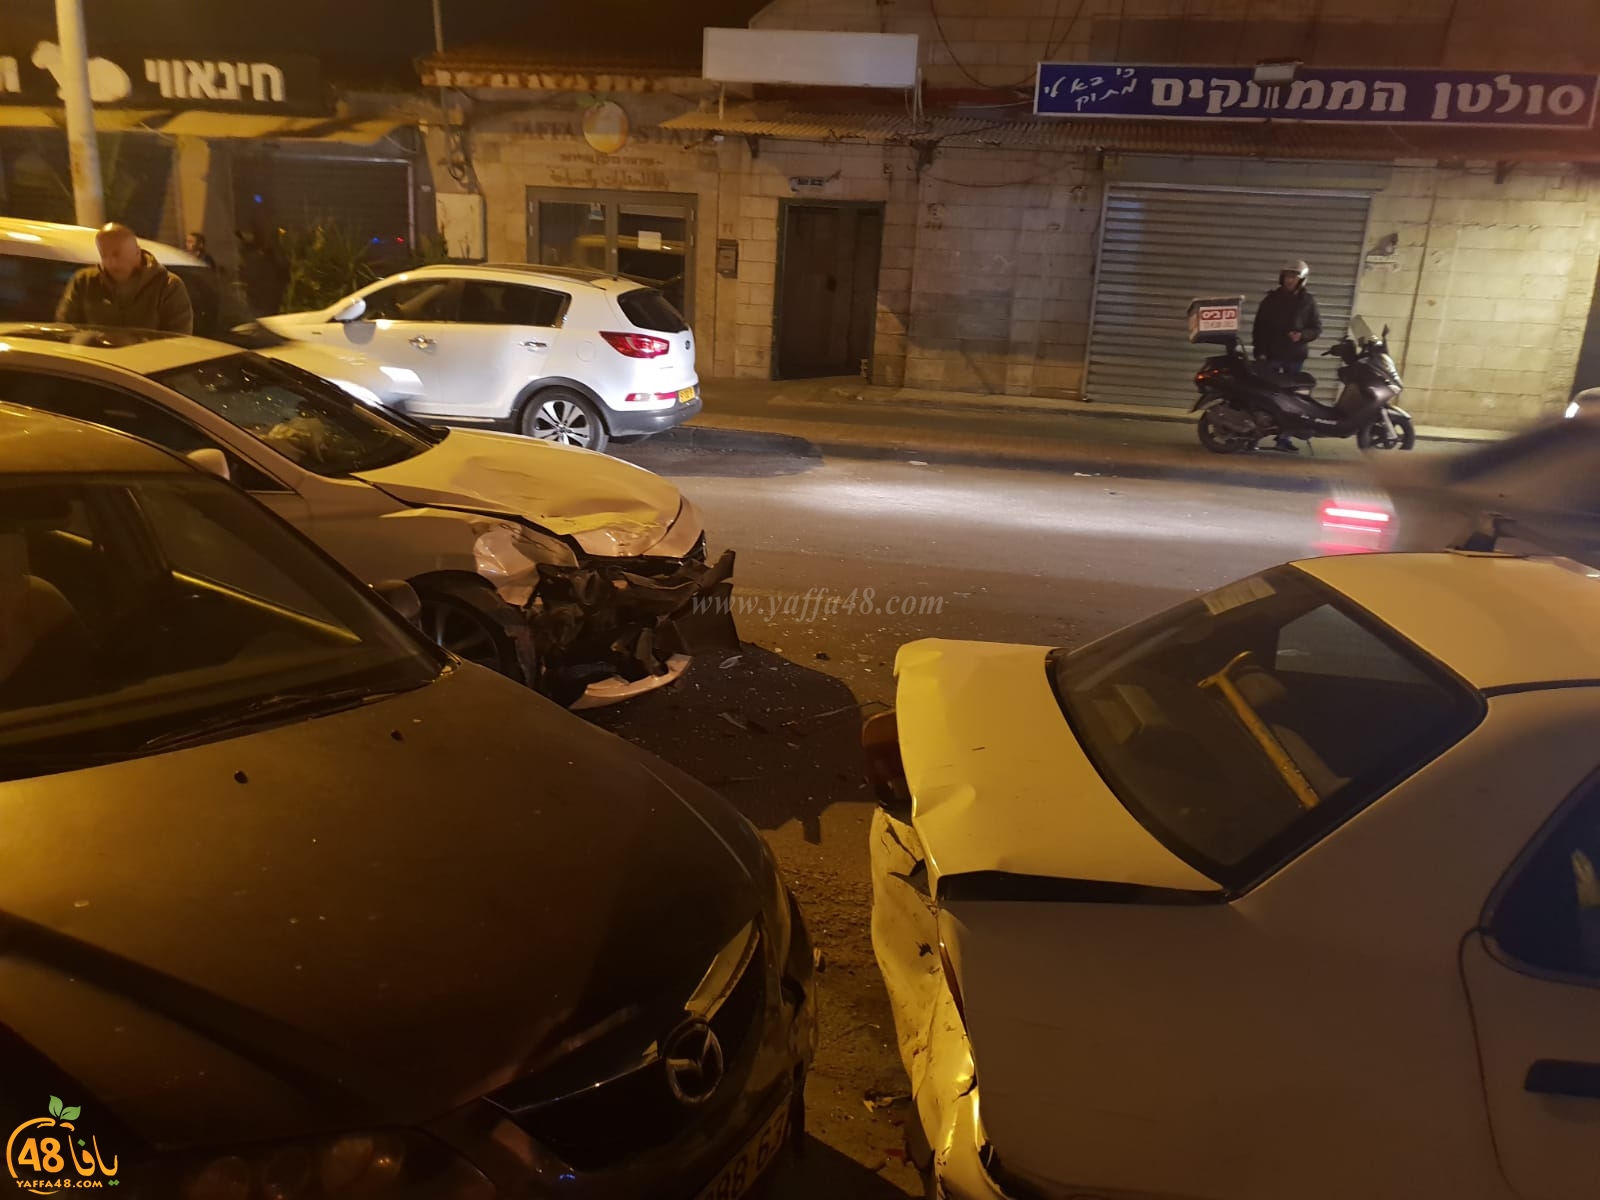  بالصور: سائق يفقد السيطرة على مركبته ويصطدم بعدة مركبات بيافا